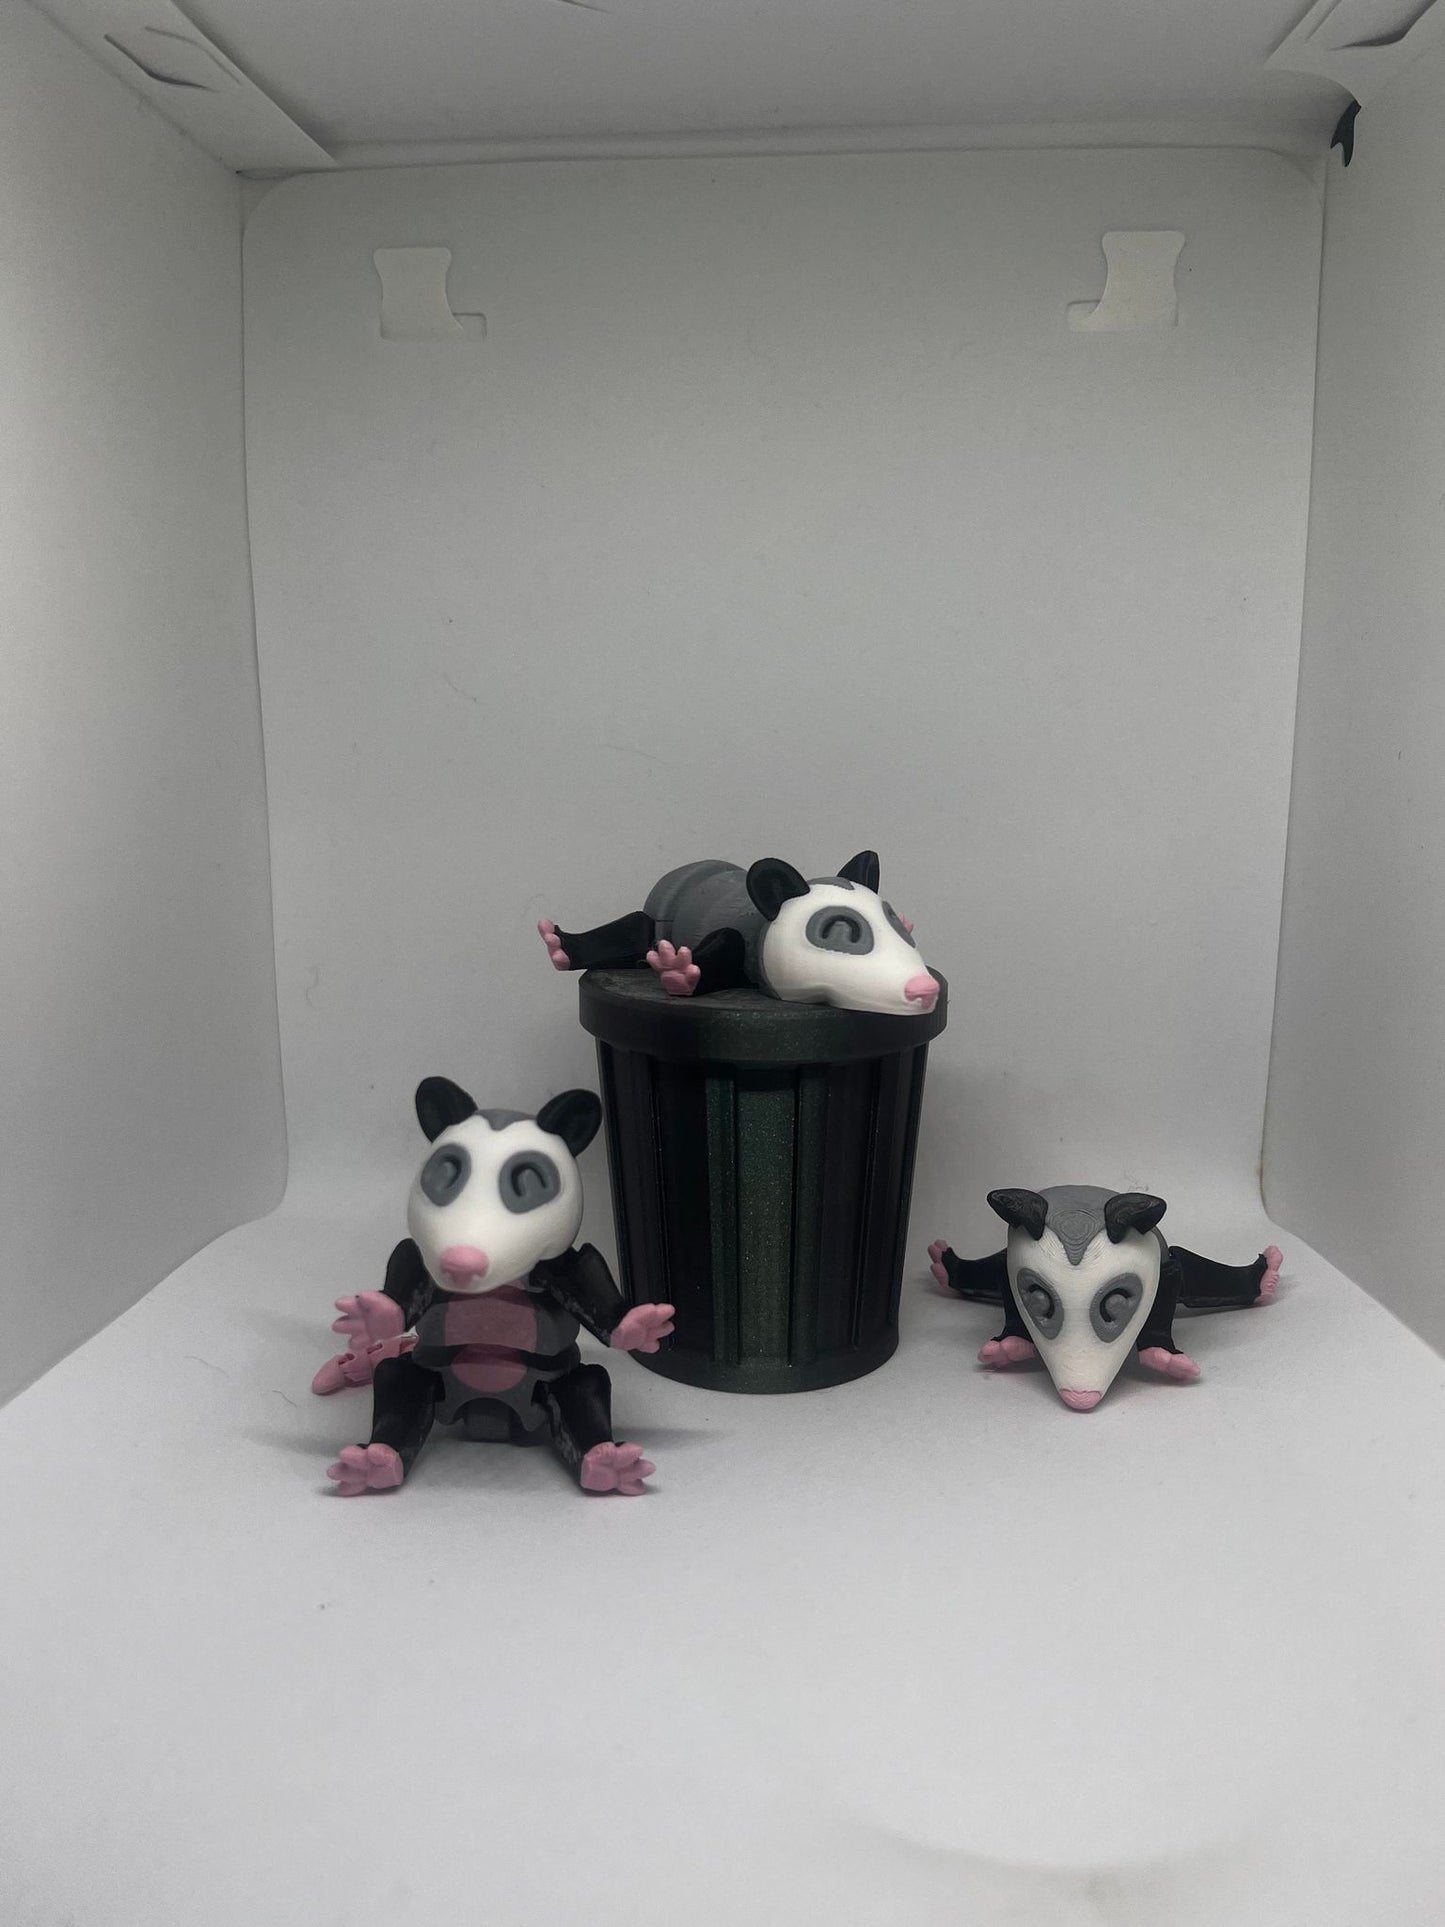 Opossum with Trash can (1 opossum 1 trashcan)